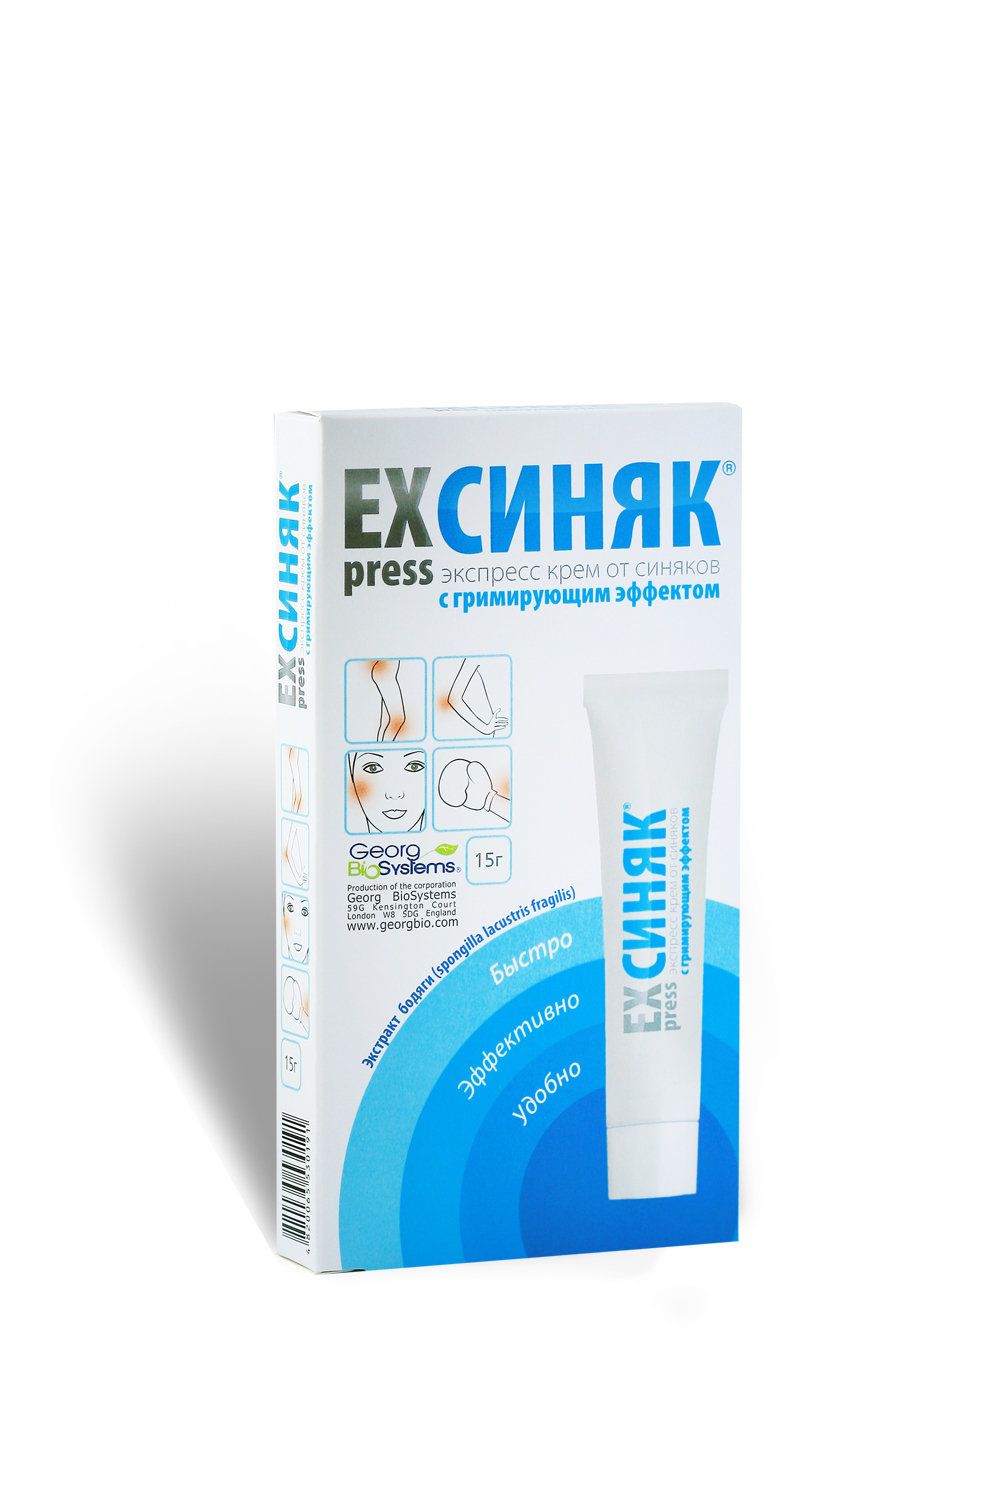 Express синяк Крем косметический с гримирующим эффектом, крем для лица, 15 г, 1 шт.